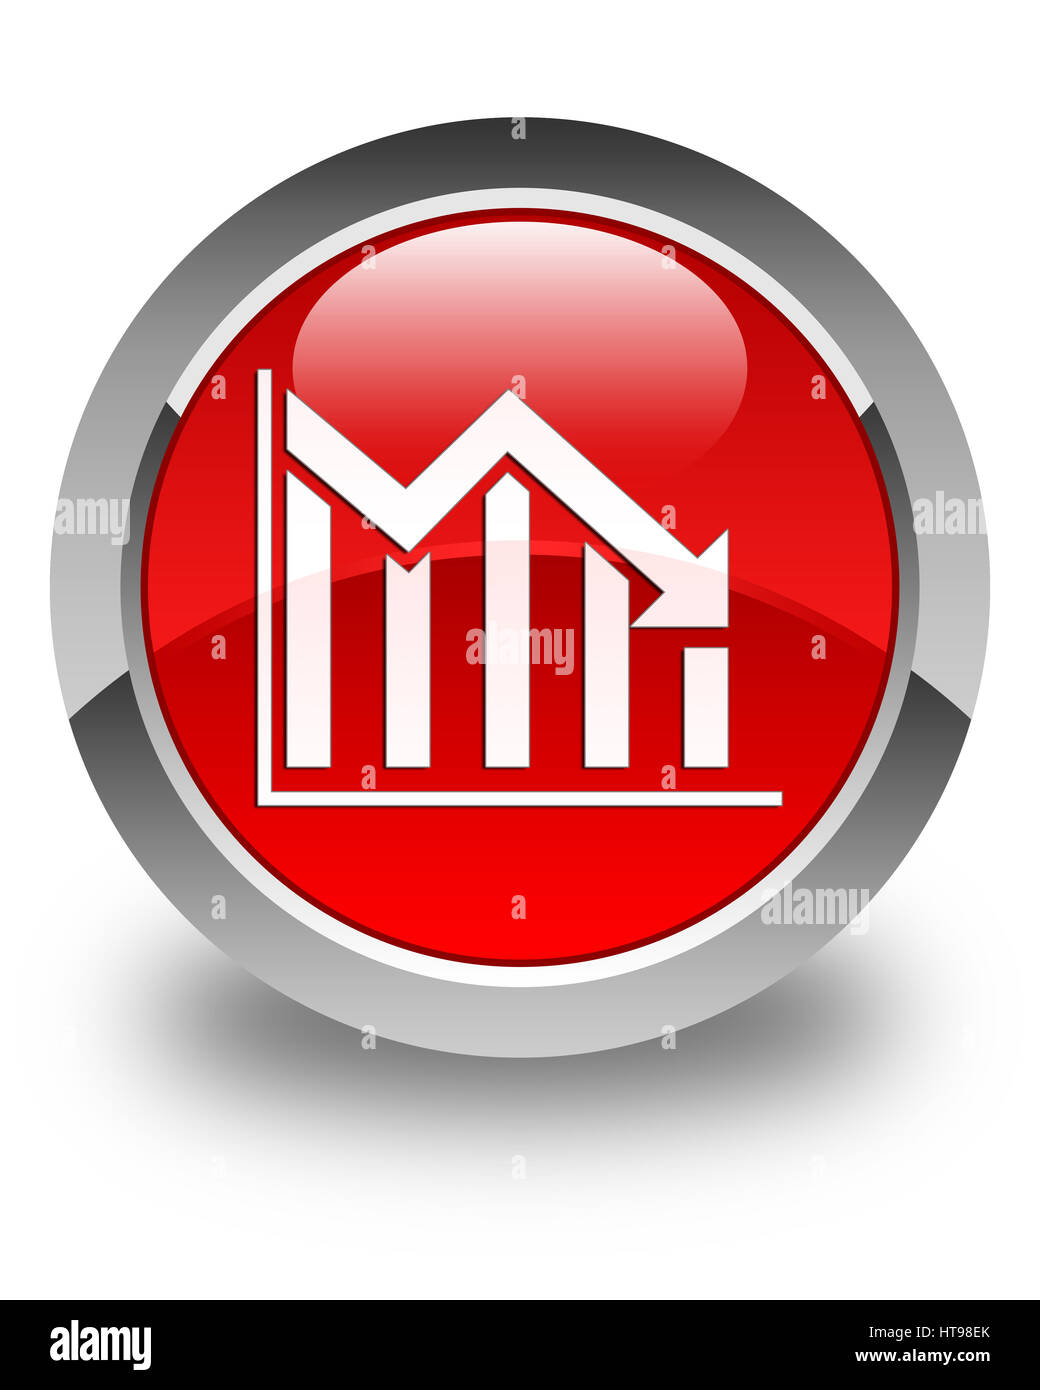 Statistiche icona giù isolato sul rosso lucido pulsante rotondo illustrazione astratta Foto Stock